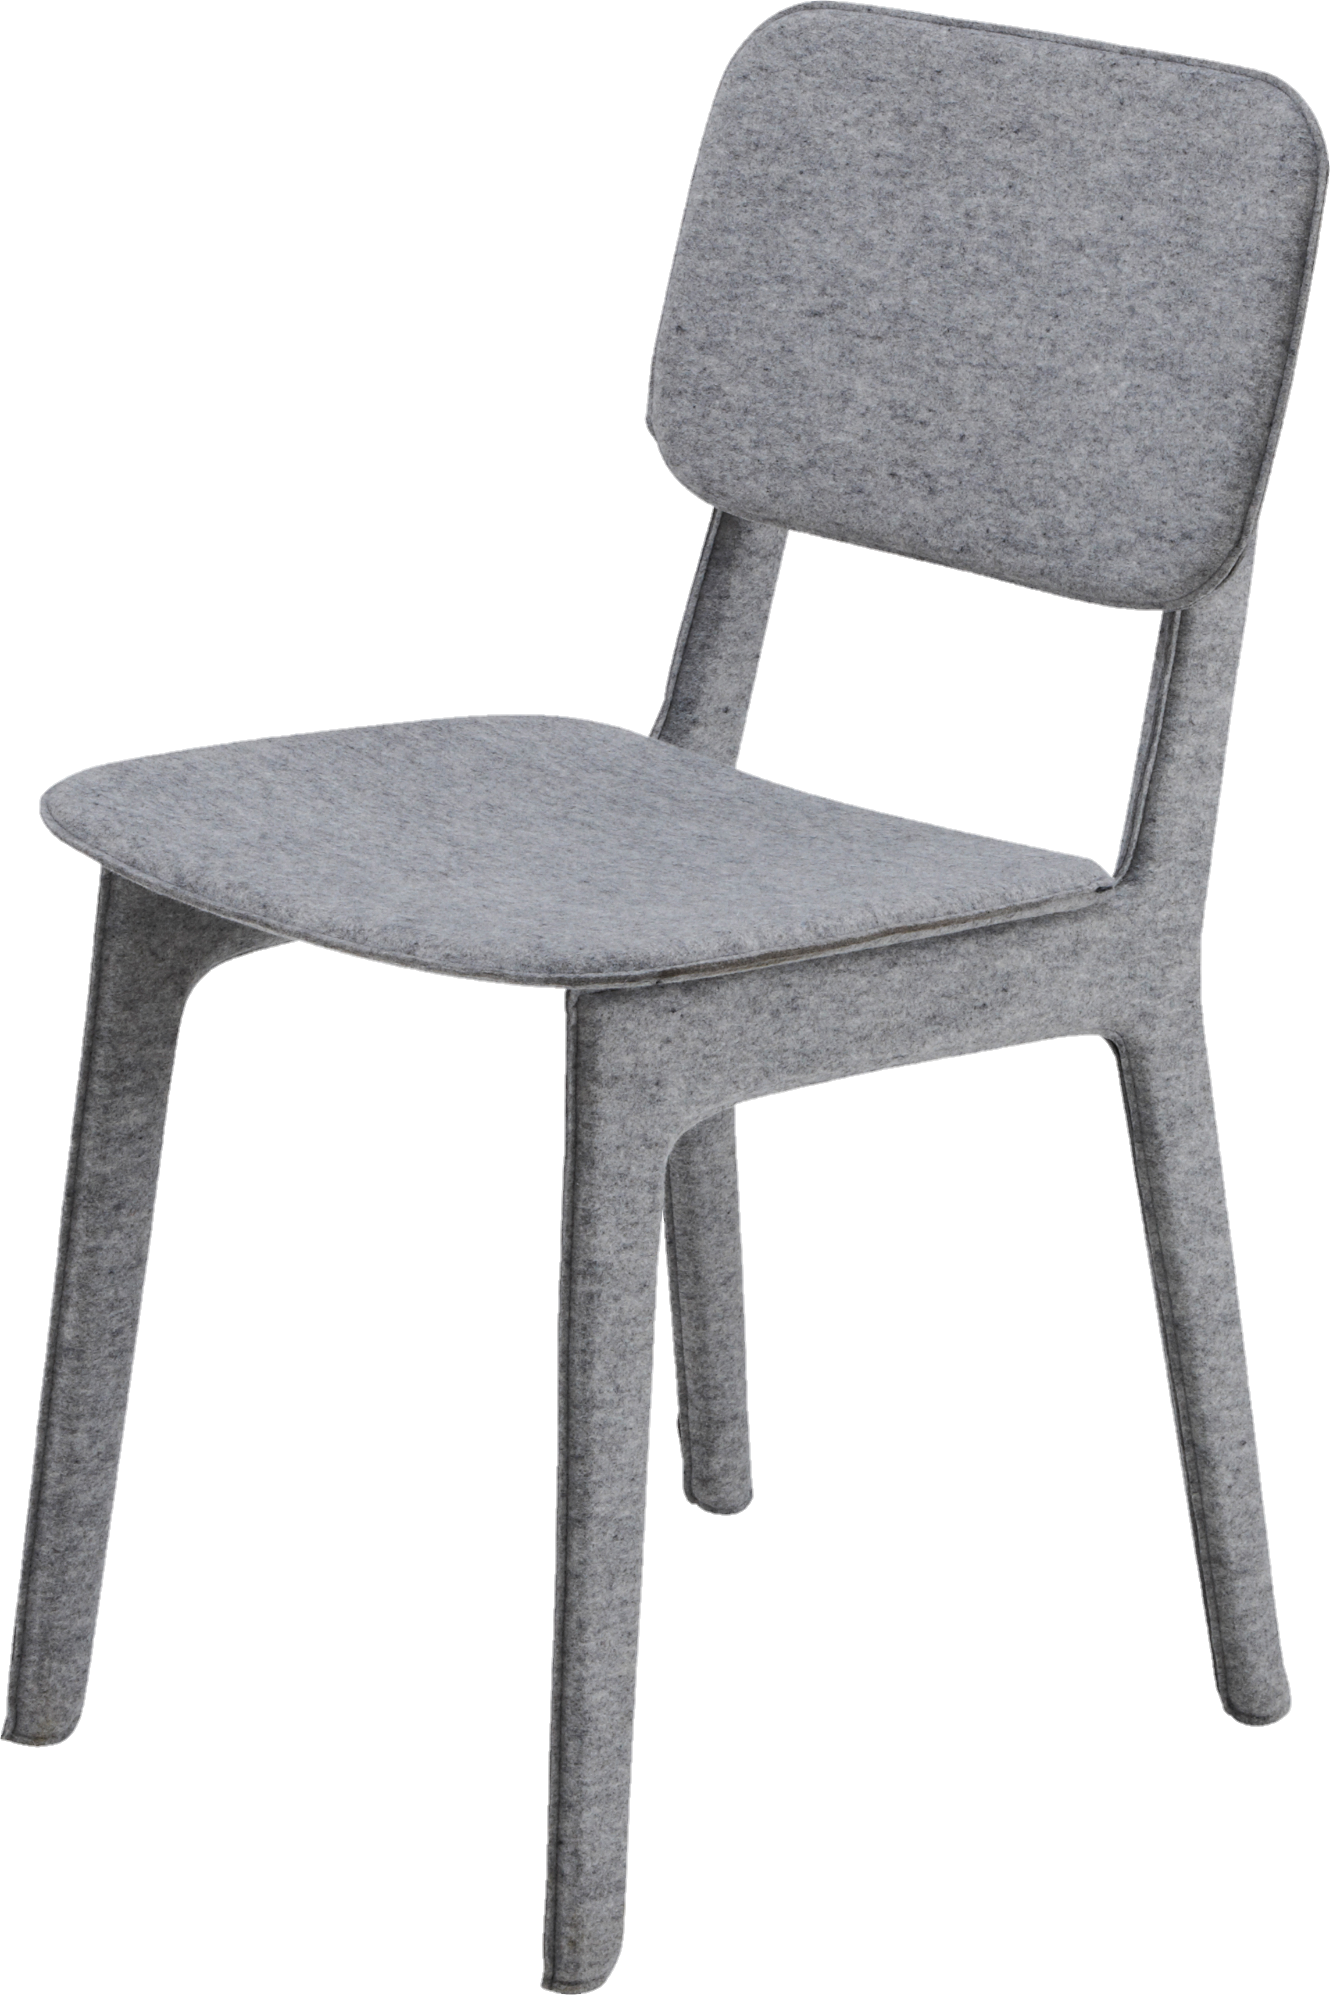 Chair-18